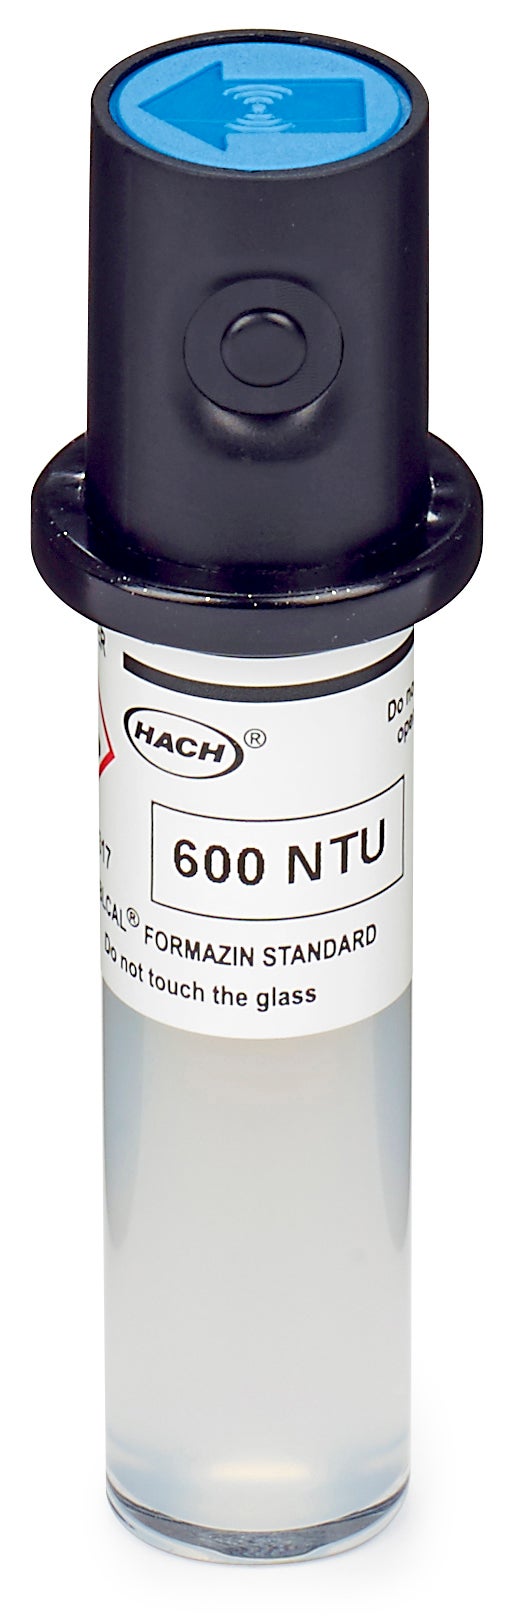 Флакон Stablcal за калибриране, 600 NTU, с RFID за лазерни турбидиметри TU5200, TU5300sc и TU5400sc